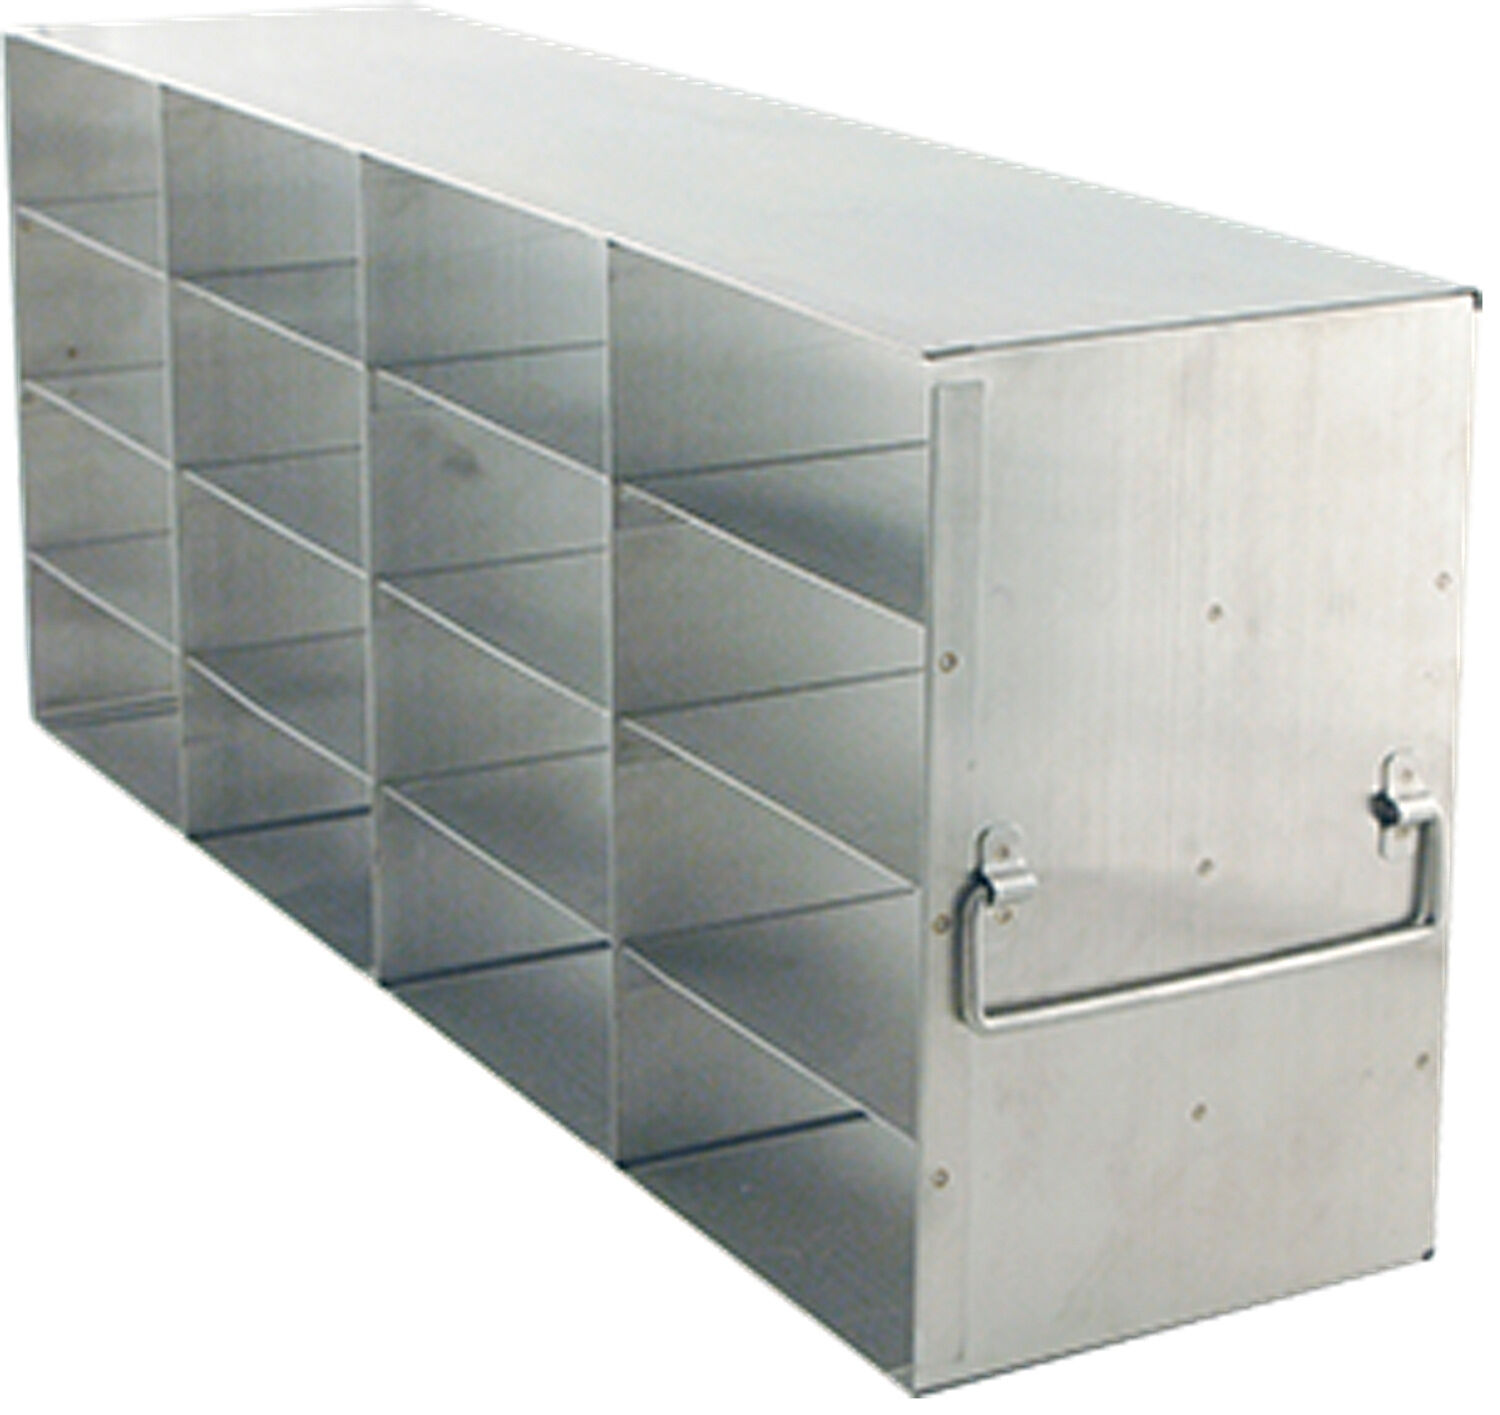 Upright Freezer Racks For 2" Boxes, Uf-442